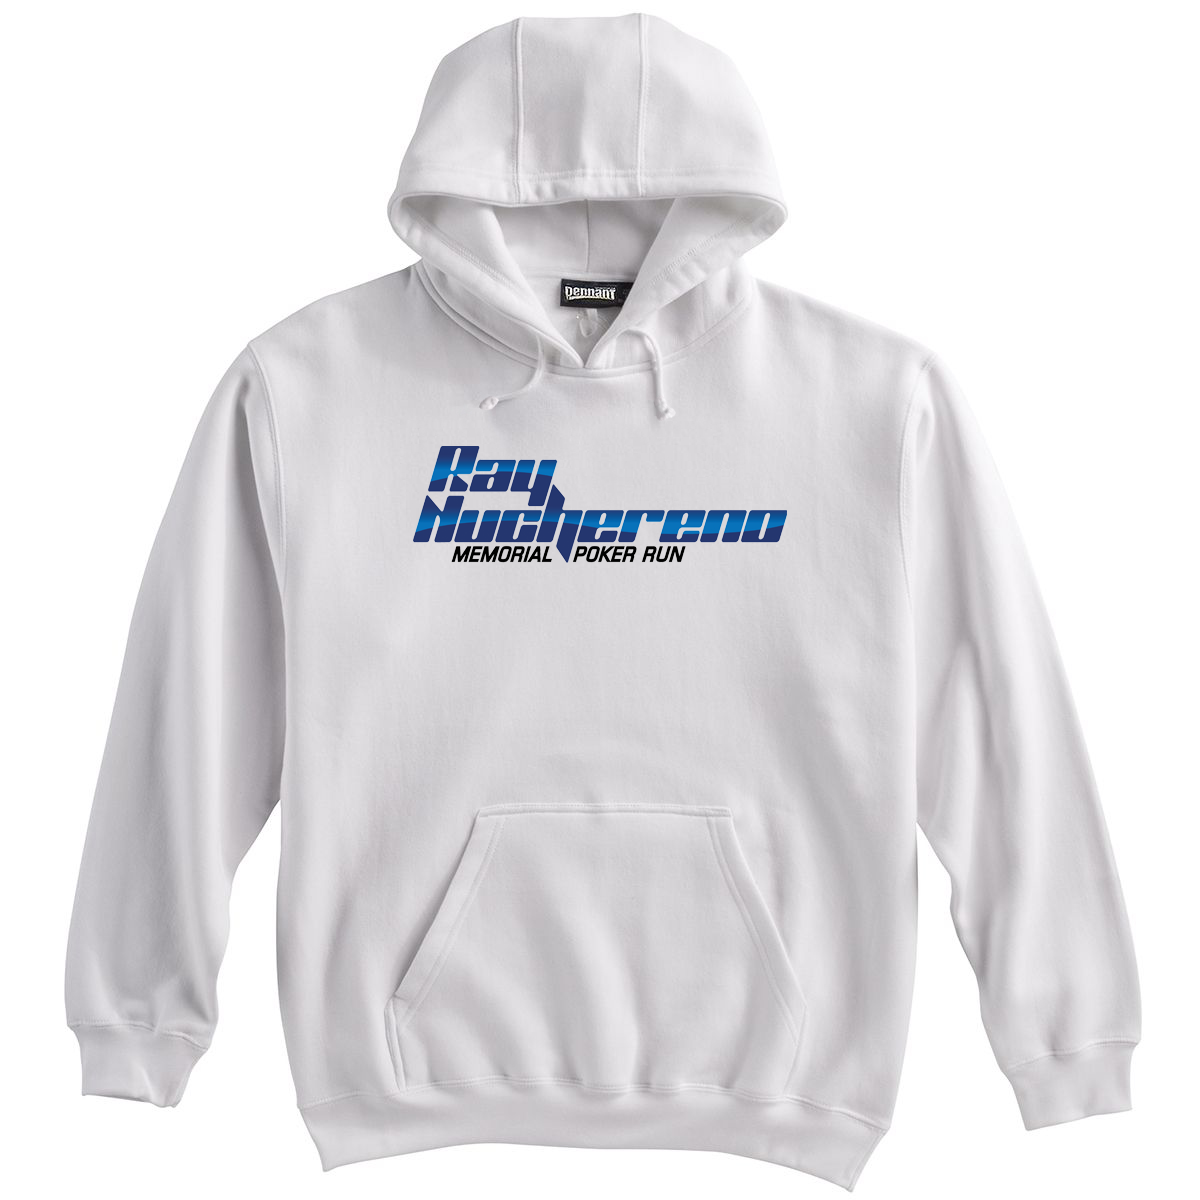 Ray Nuchereno Poker Runs Sweatshirt